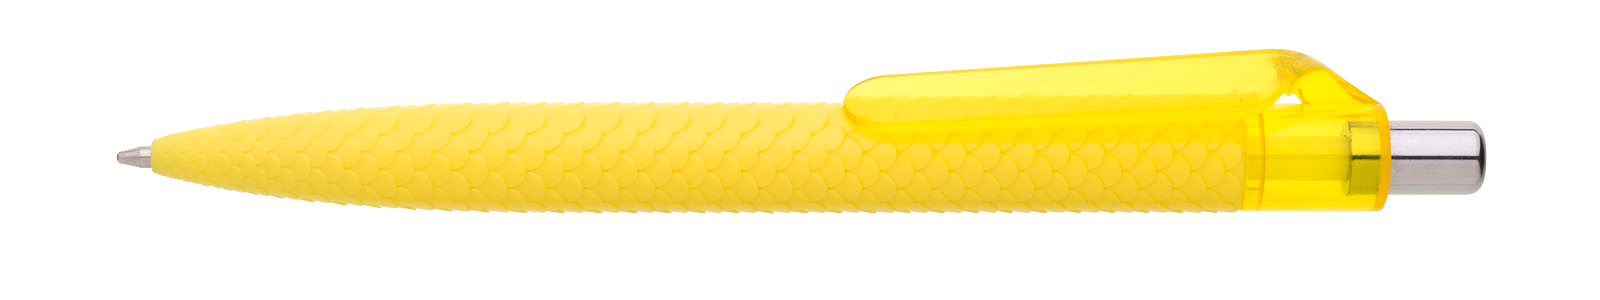 Propiska plast PANGO, žlutá